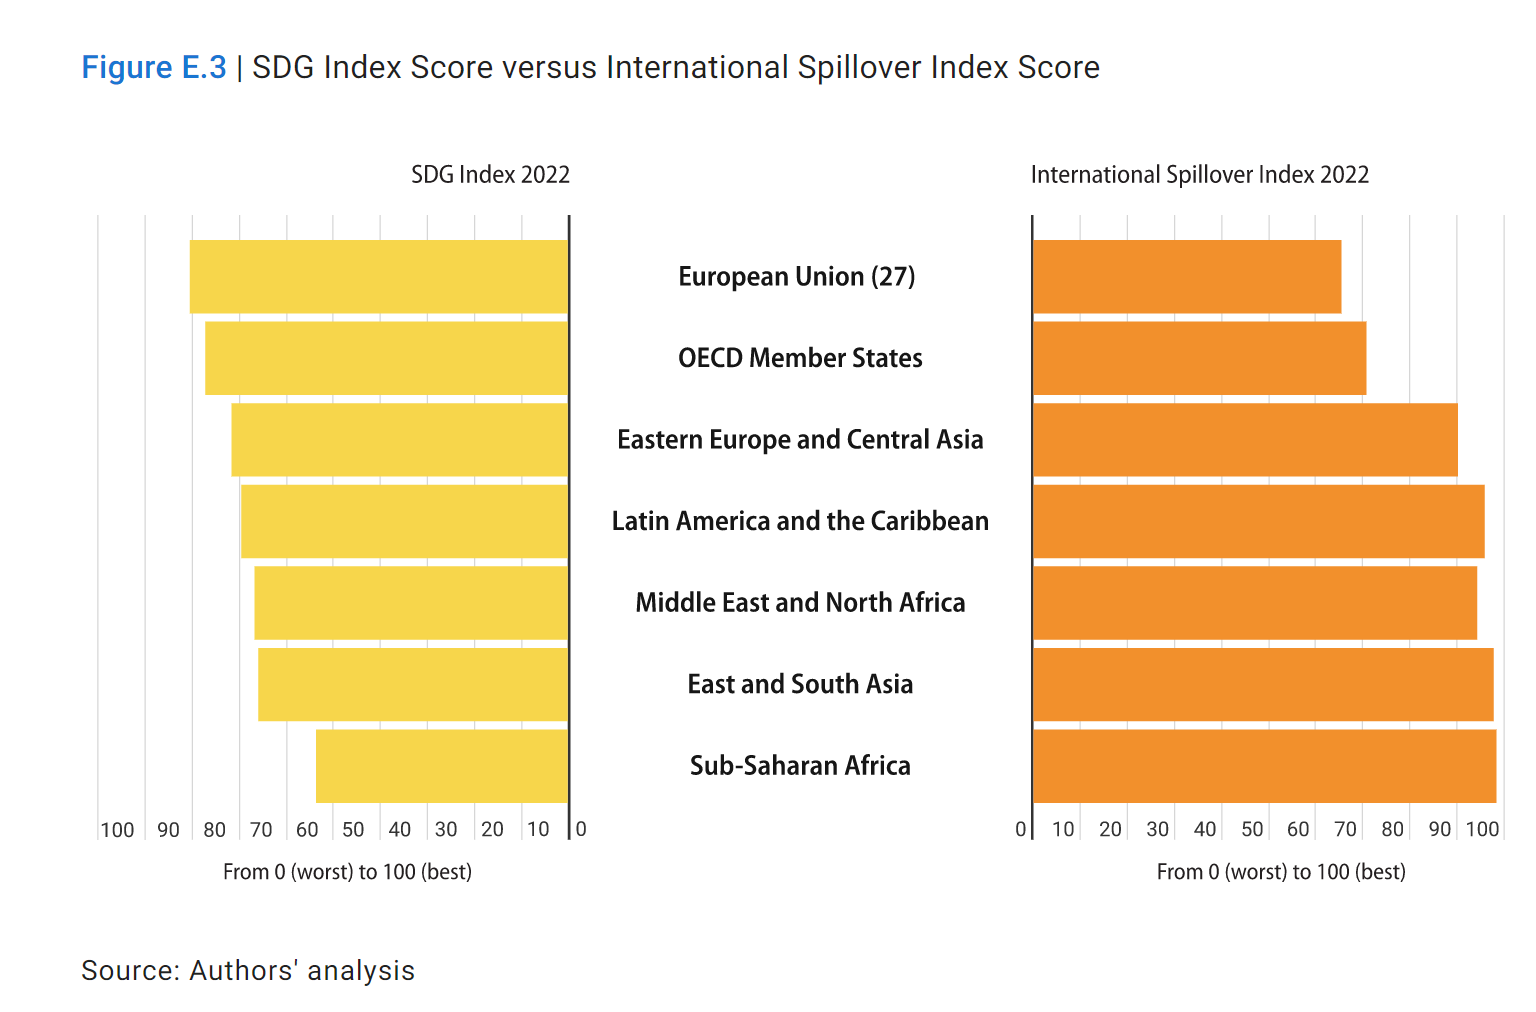 Der SDG Index im Vergleich zum Spillover Index